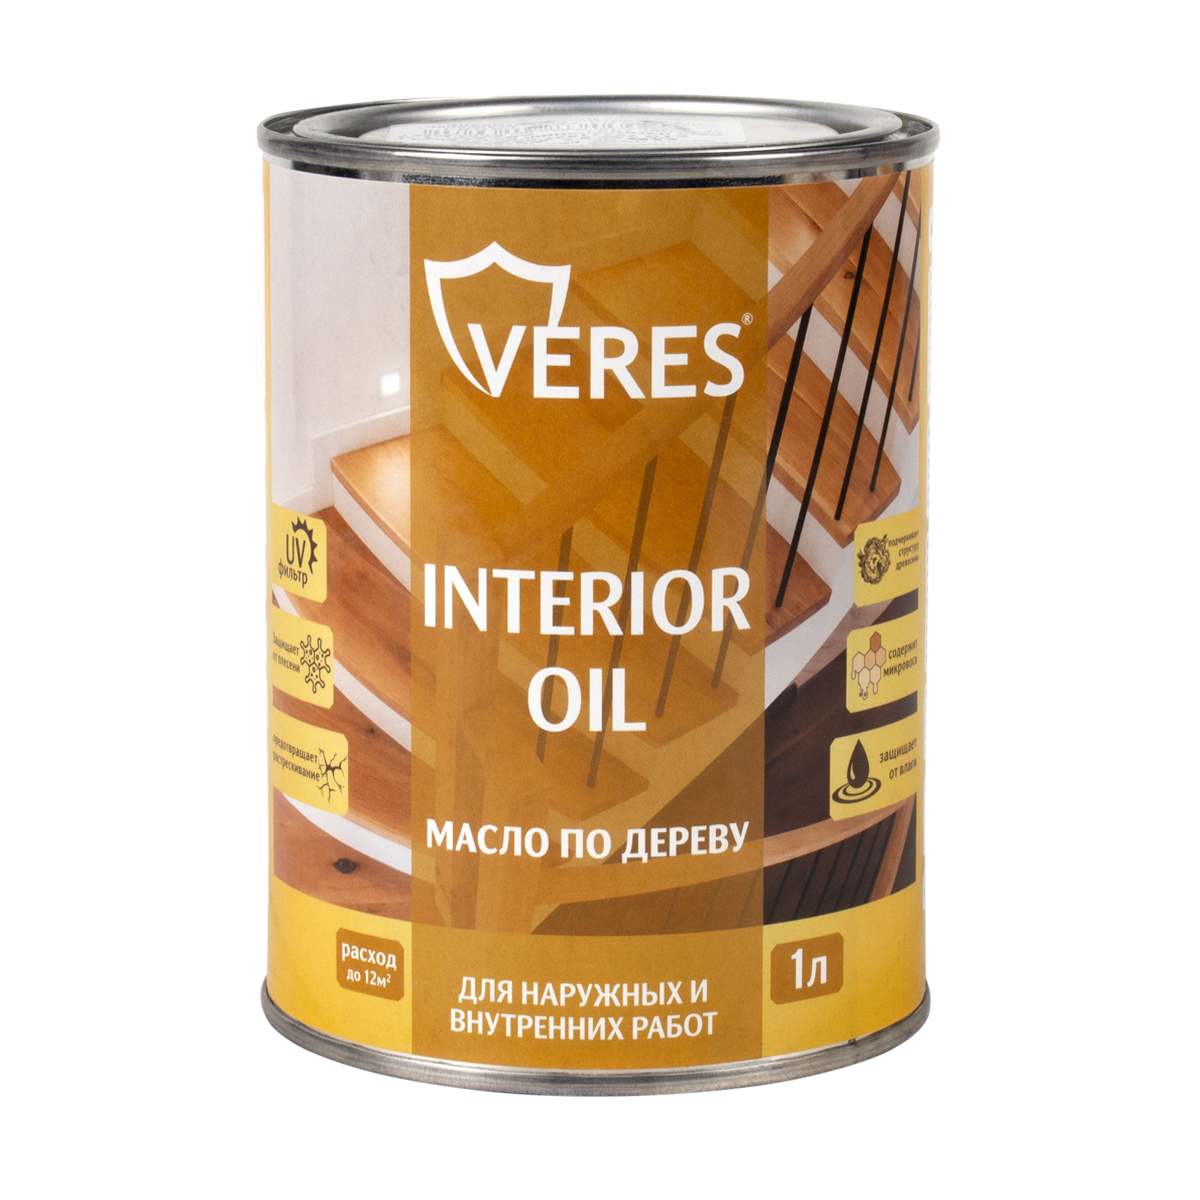 фото Масло для дерева veres interior oil, 1 л, бесцветное